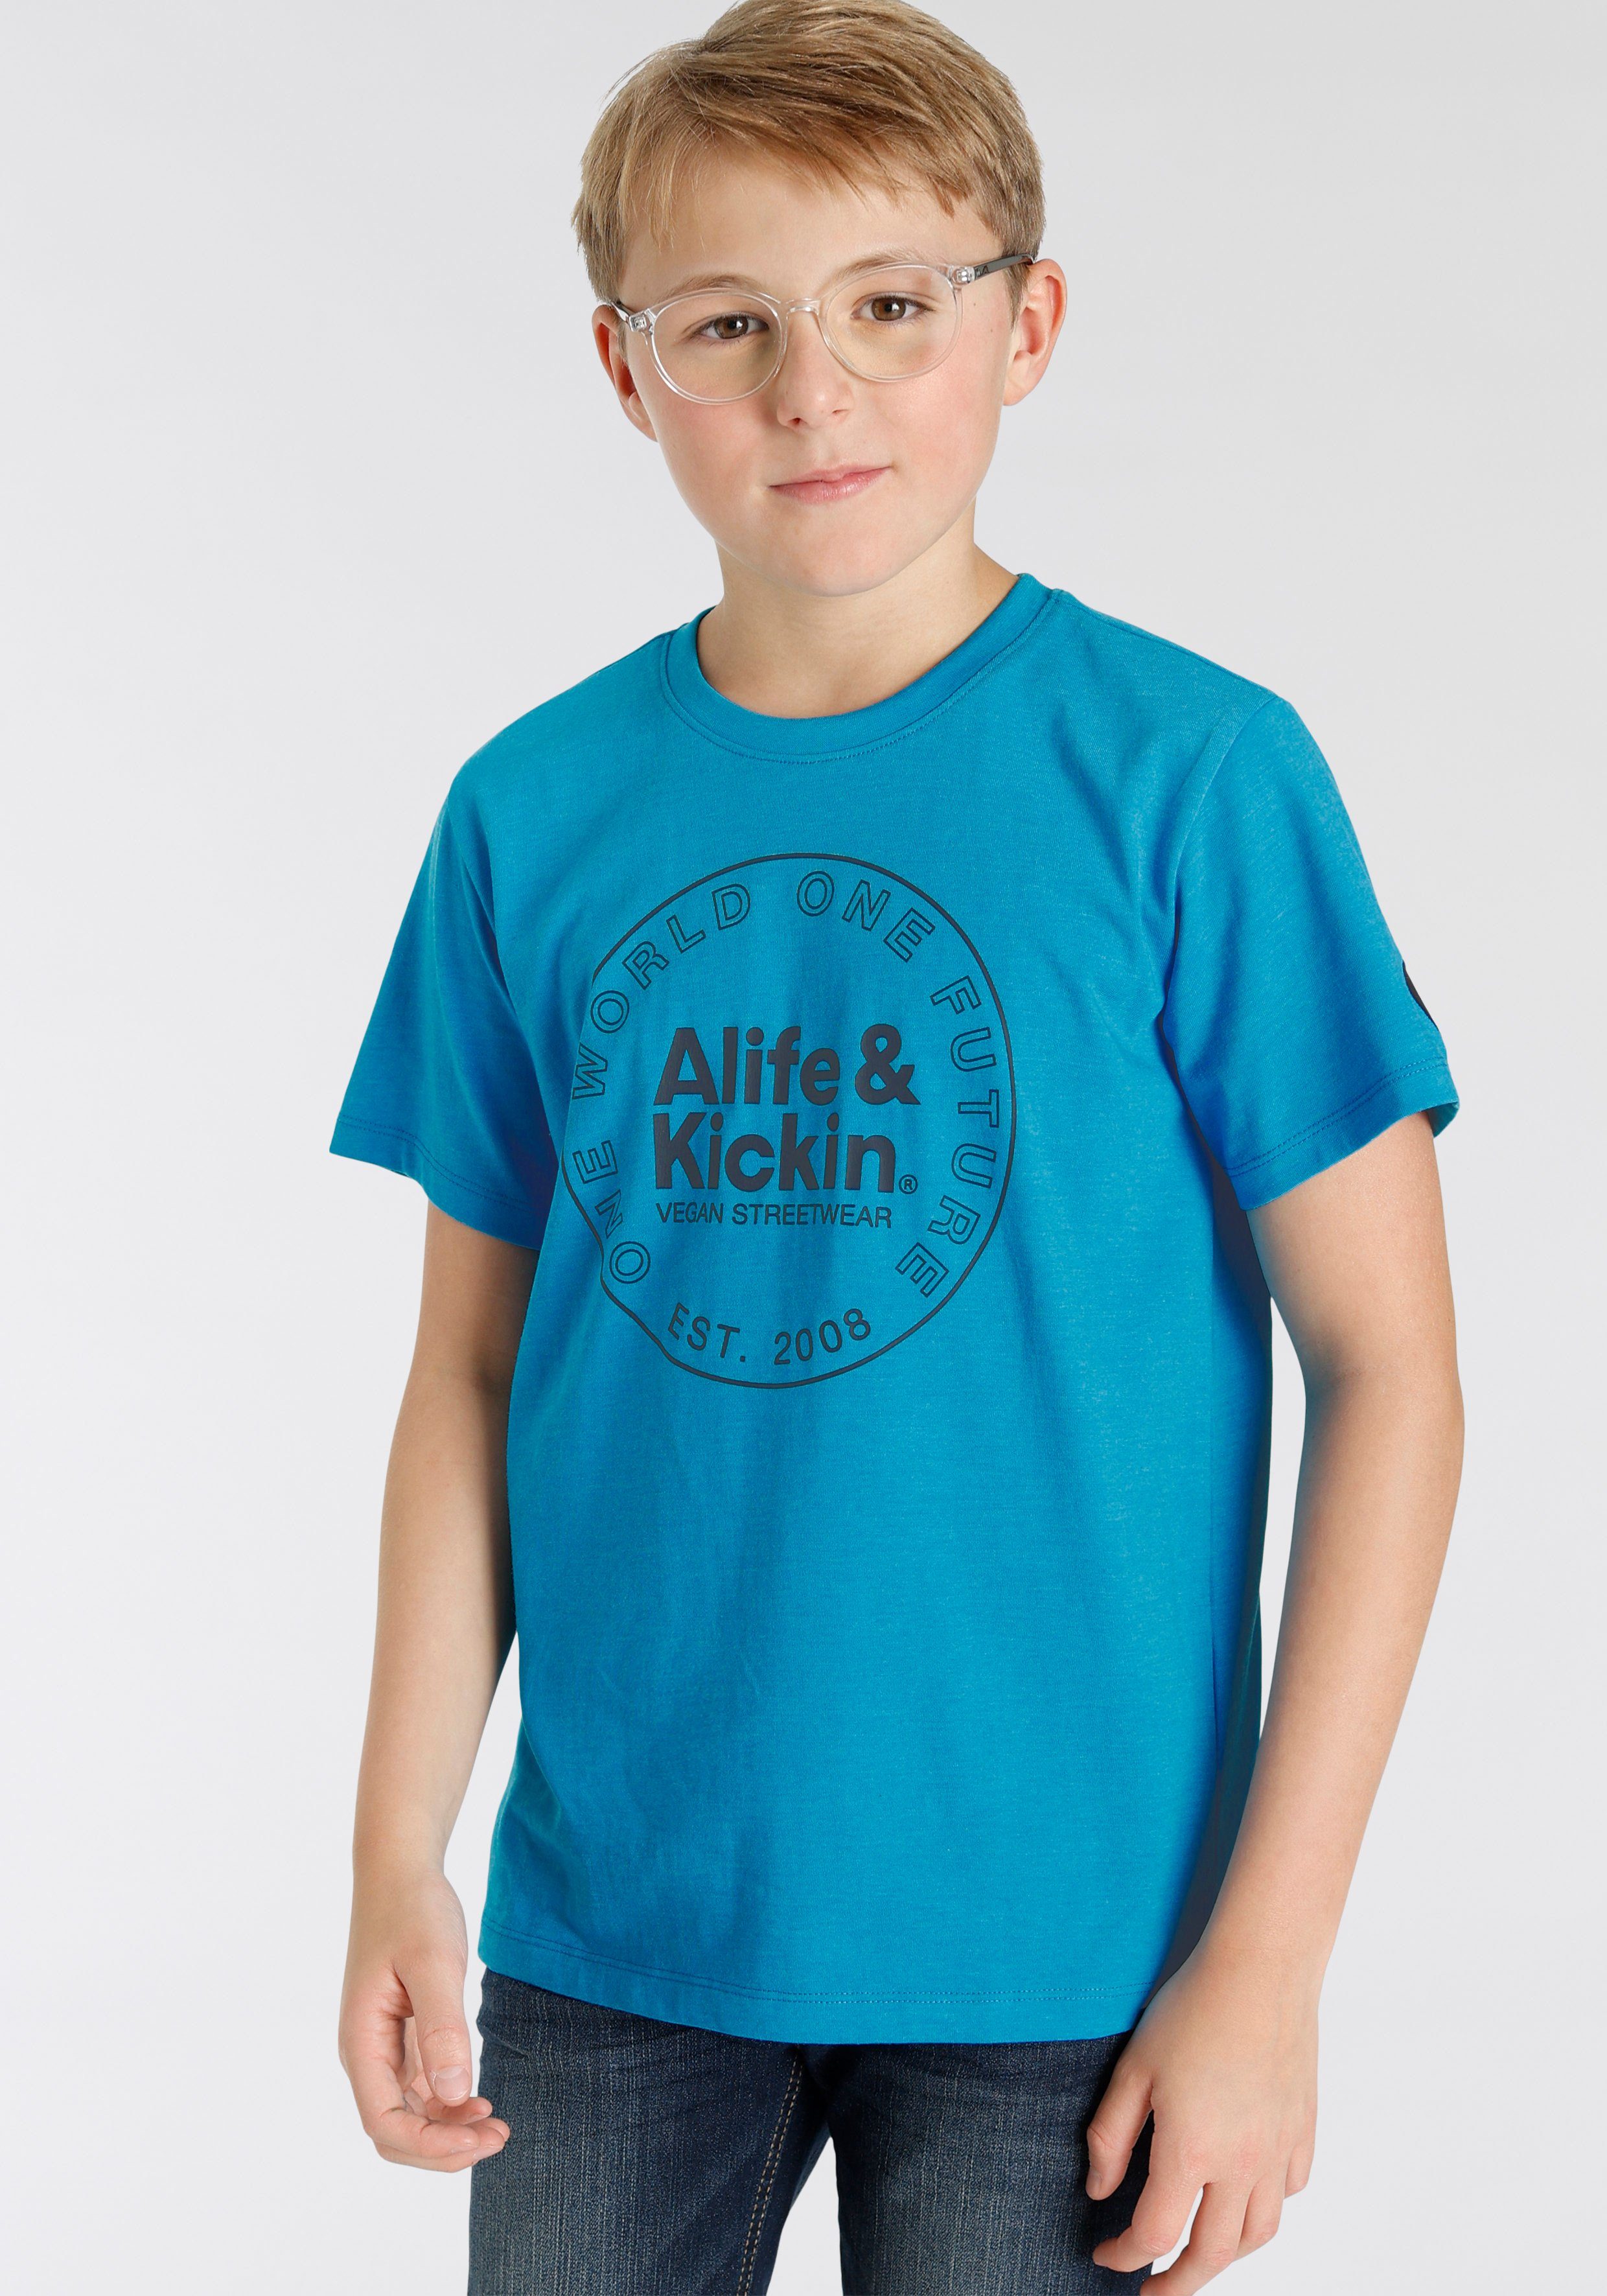 Alife & für T-Shirt Alife&Kickin Kickin MARKE! in NEUE Kids Qualität, melierter Logo-Print